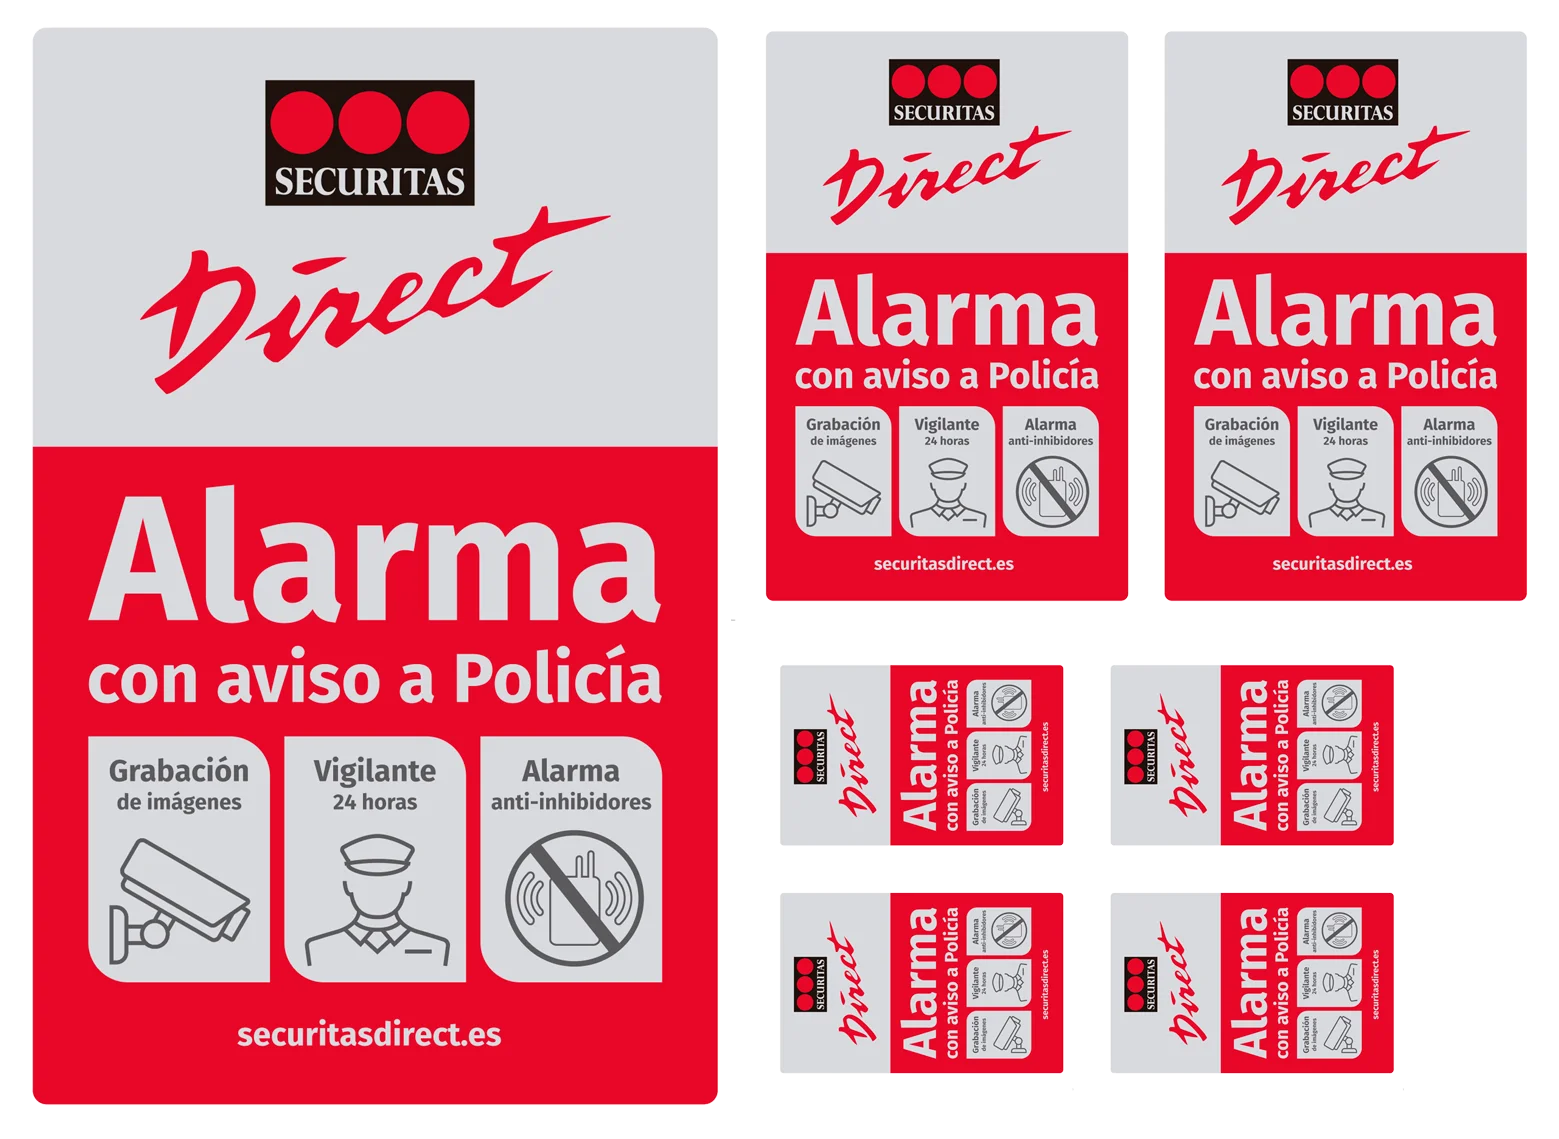 Securitas direct, alarma placas en 08924 Santa Coloma de Gramanet